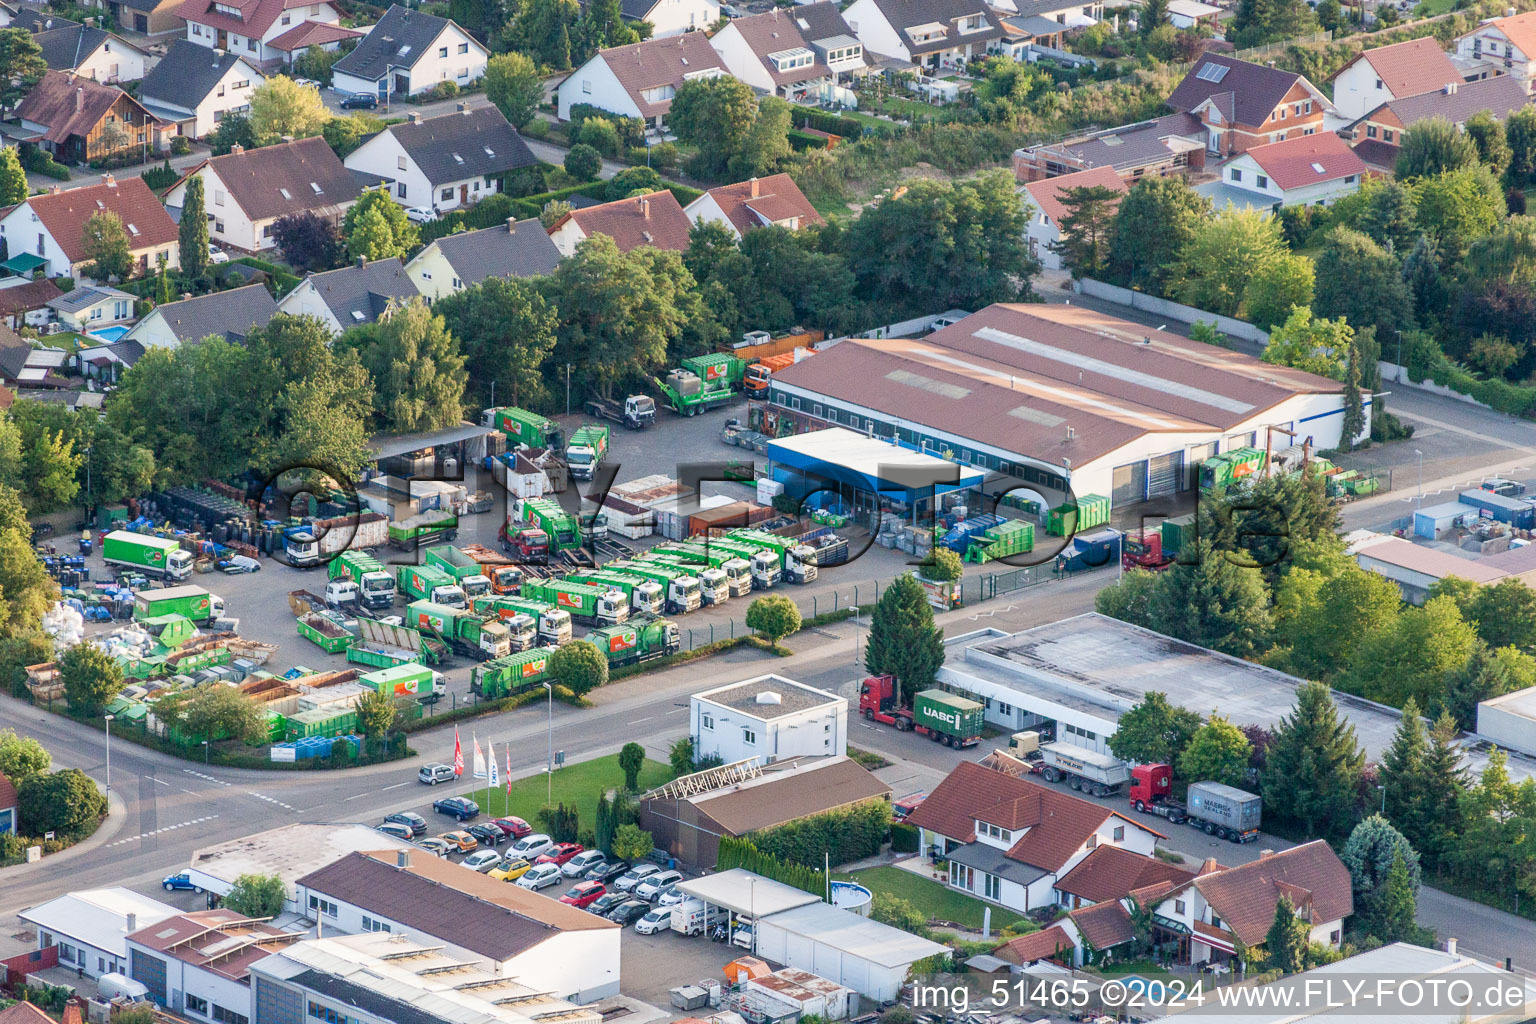 Vue aérienne de Site de la déchetterie usine de tri des déchets et recyclage Rülzheim à Rülzheim dans le département Rhénanie-Palatinat, Allemagne